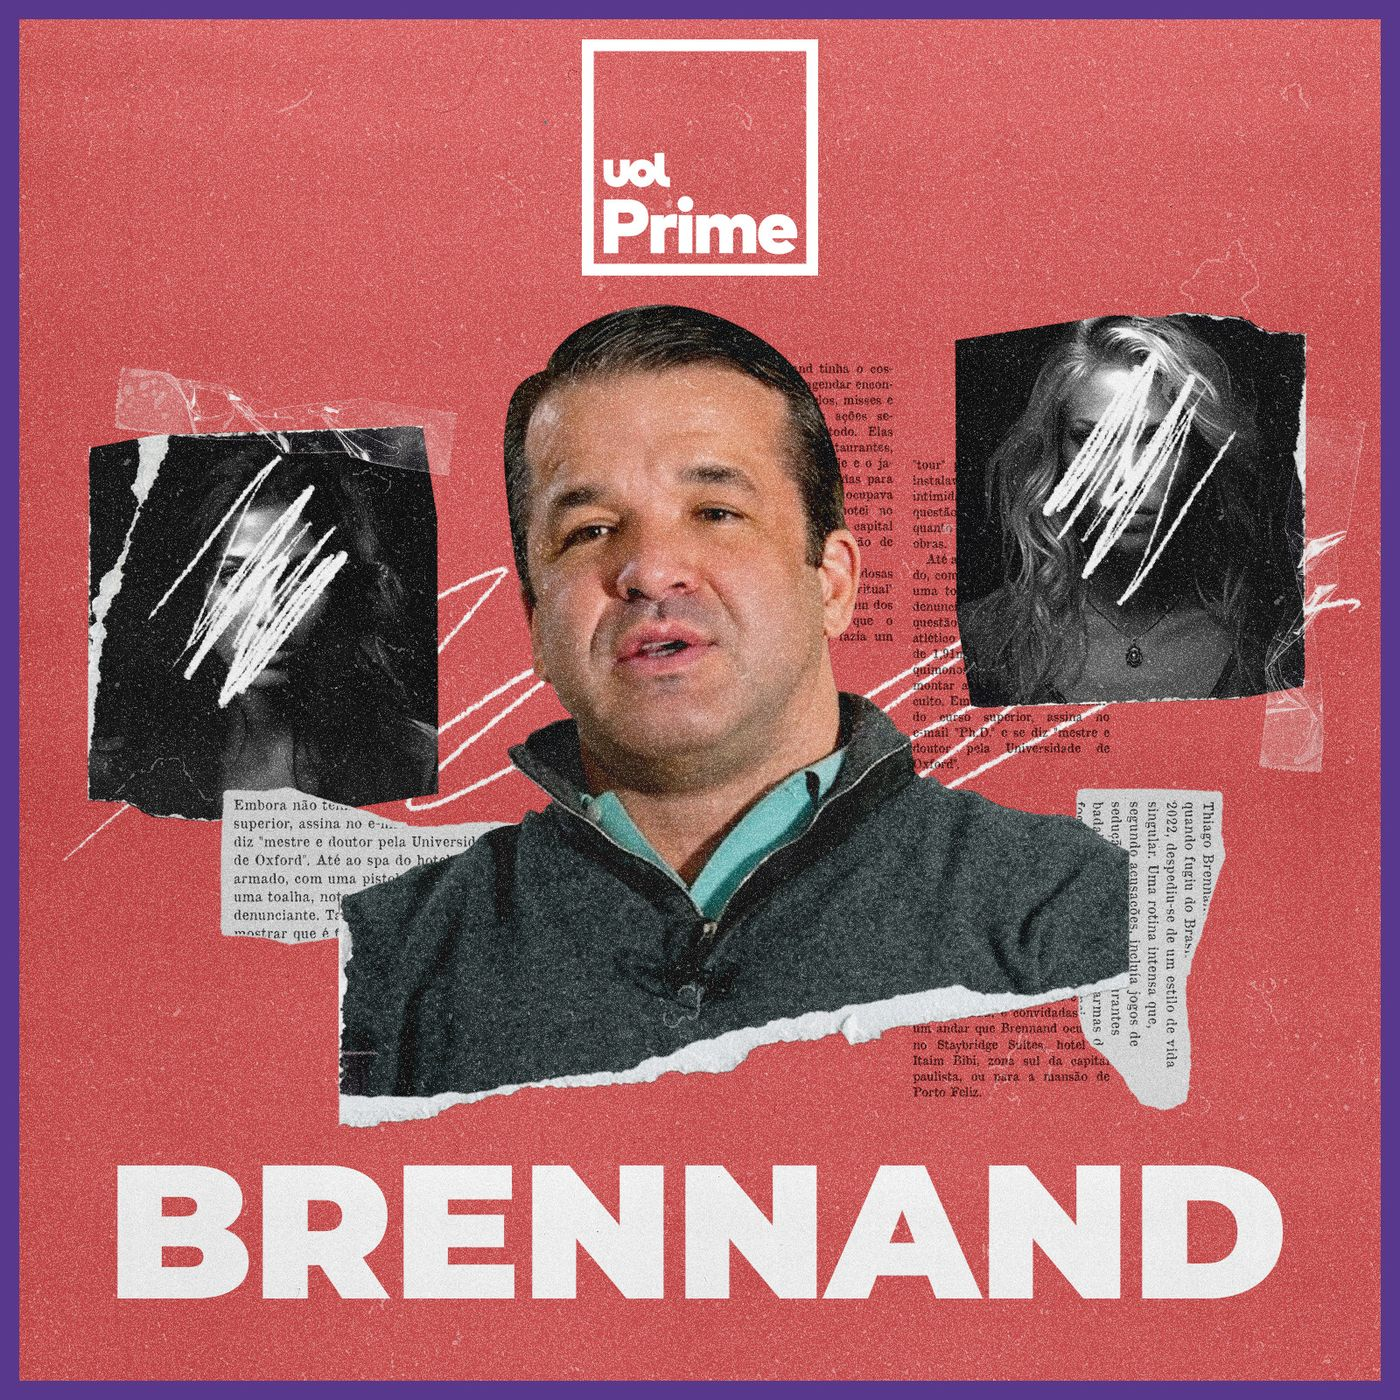 “Brennand”: conheça o novo podcast de UOL Prime